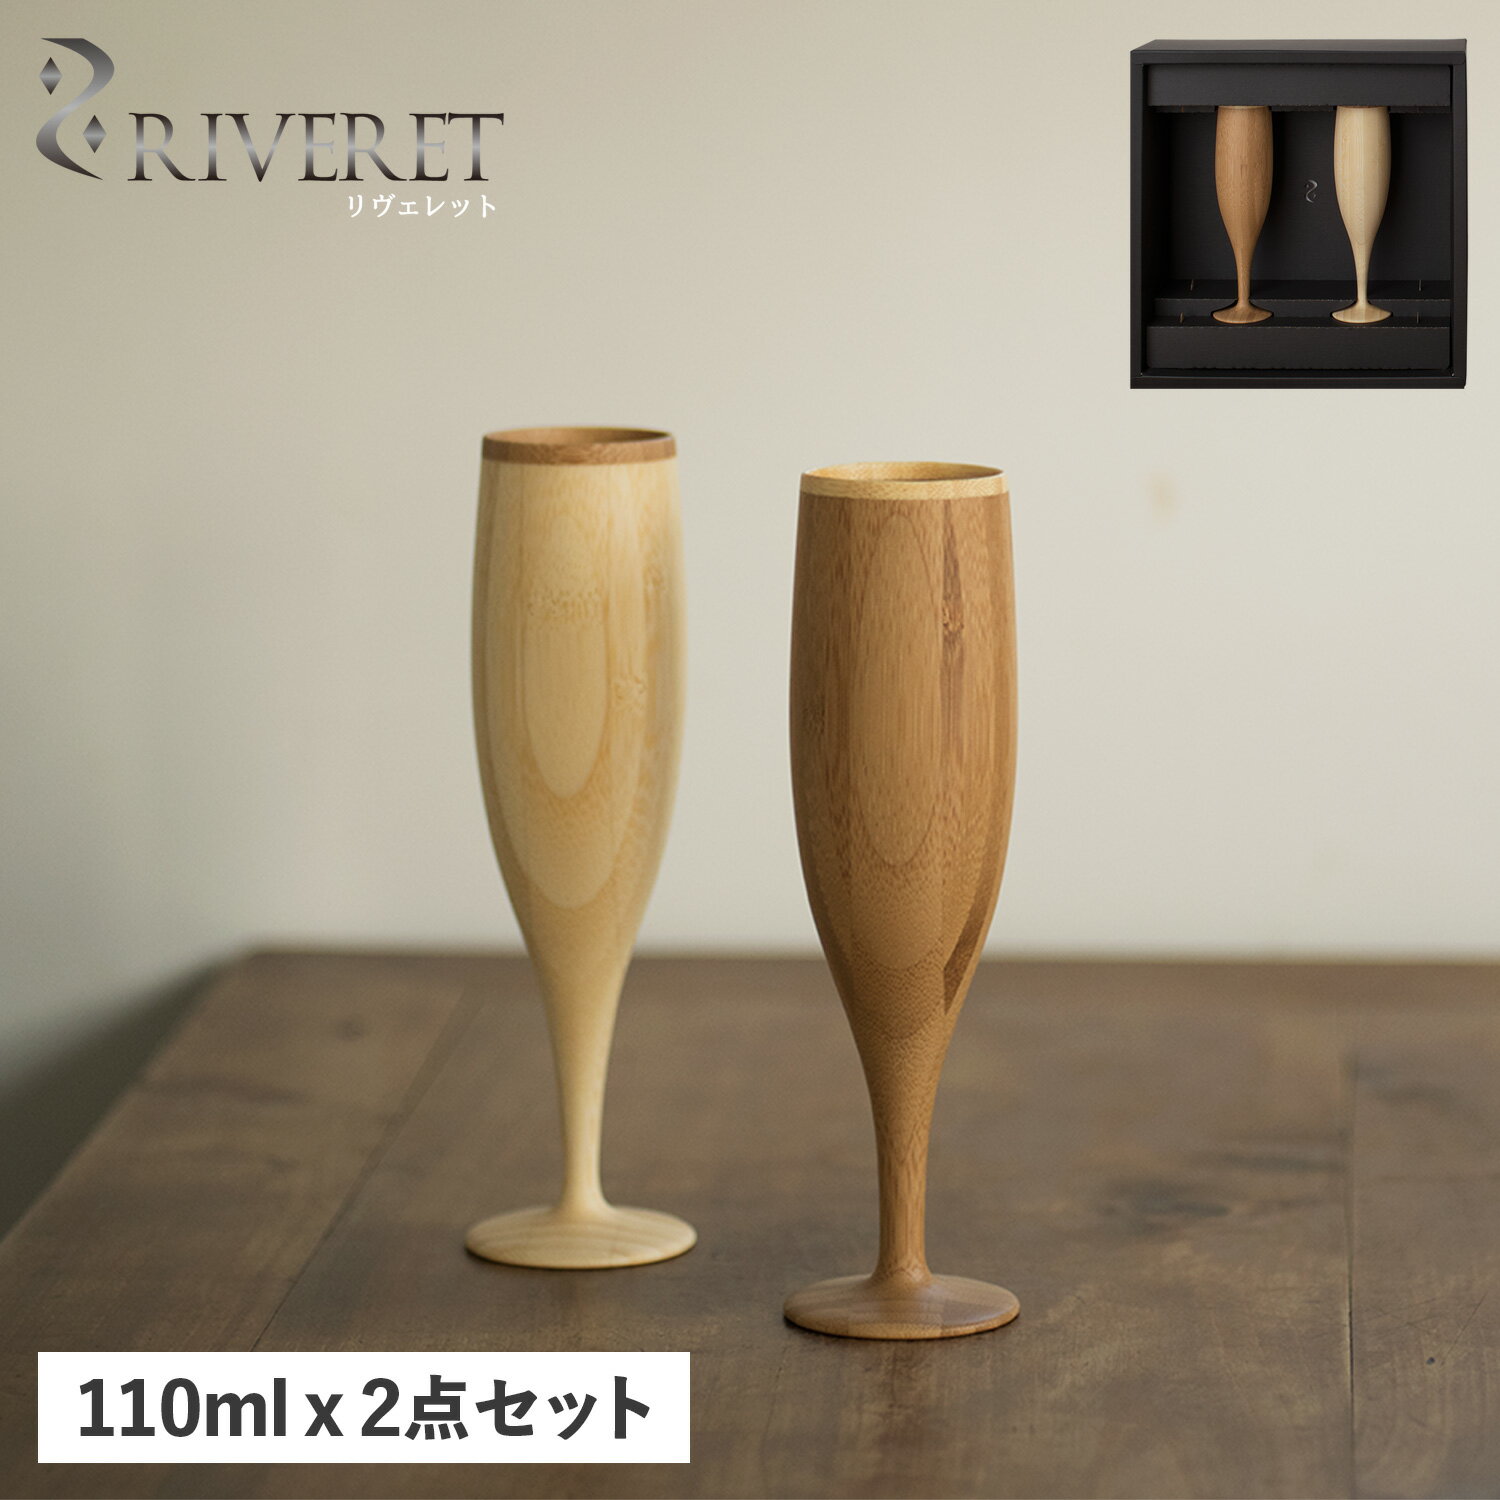 リヴェレット RIVERET グラス シャンパングラス 2点セット フルート 天然素材 日本製 軽量 食洗器対応 リベレット FLUTE PAIR RV-107WB 母の日